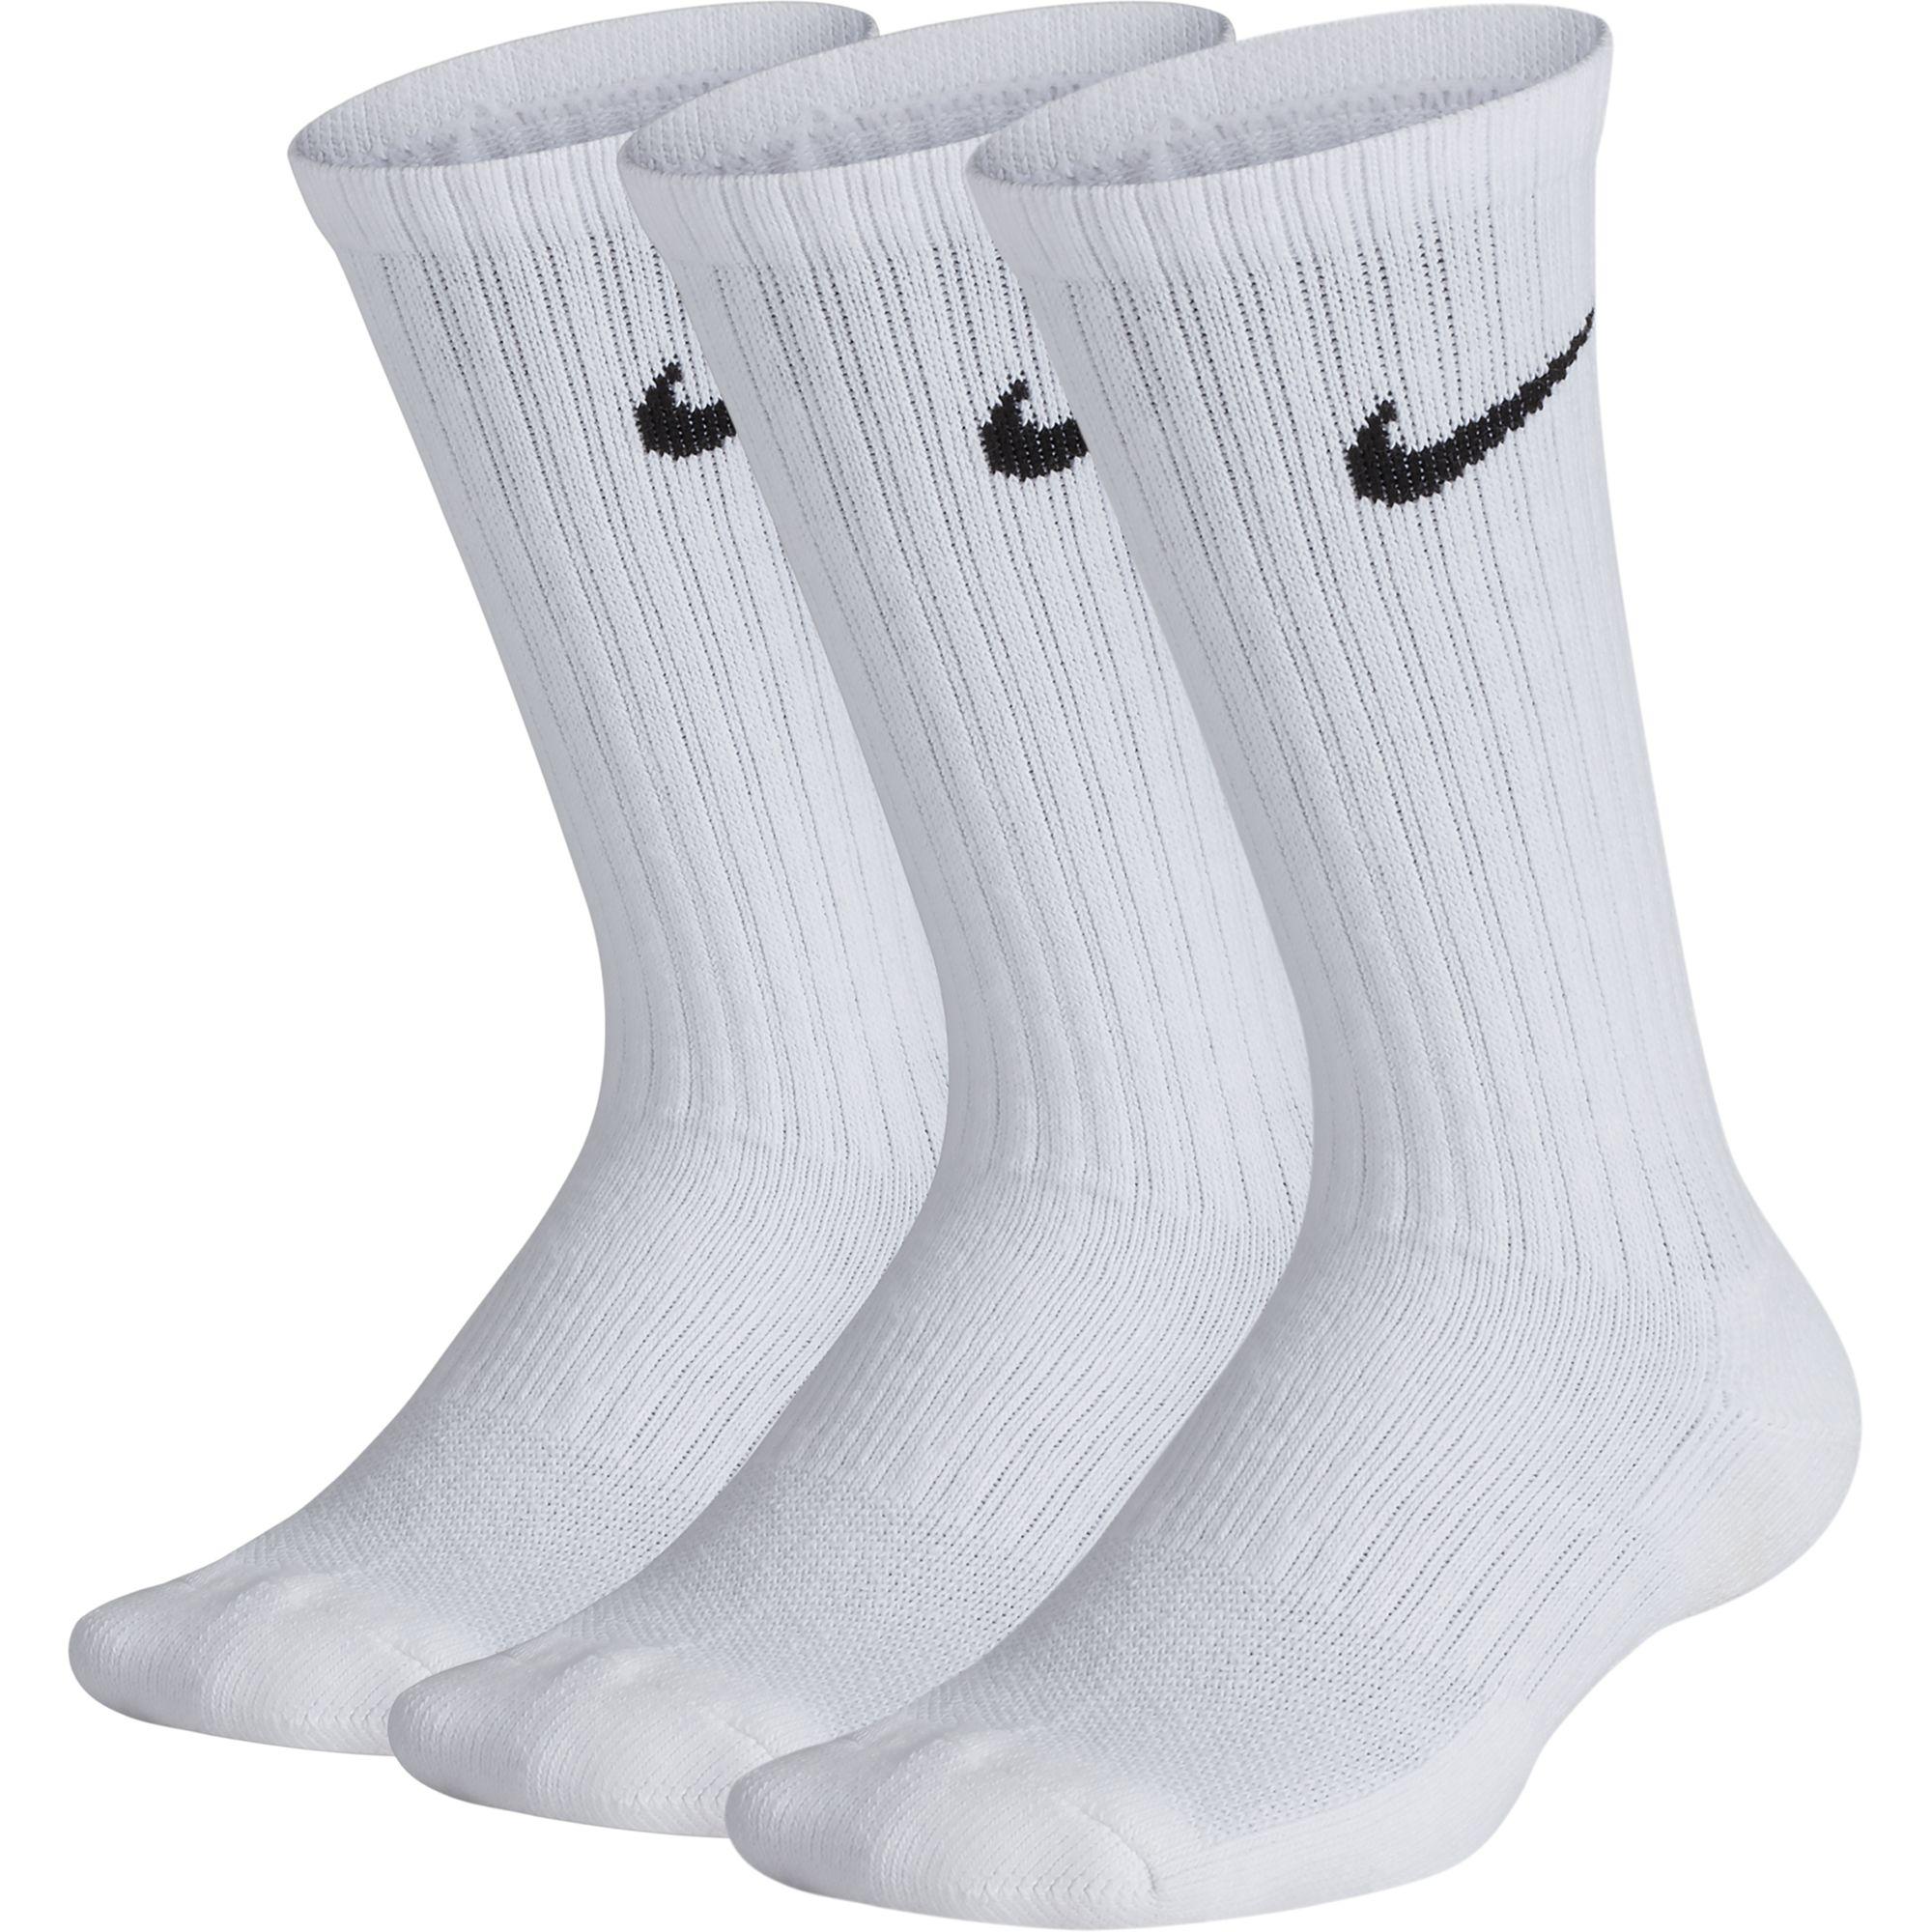 Nike Kids Performance Cushioned Crew Training Socks (3 Pairs) - White ...